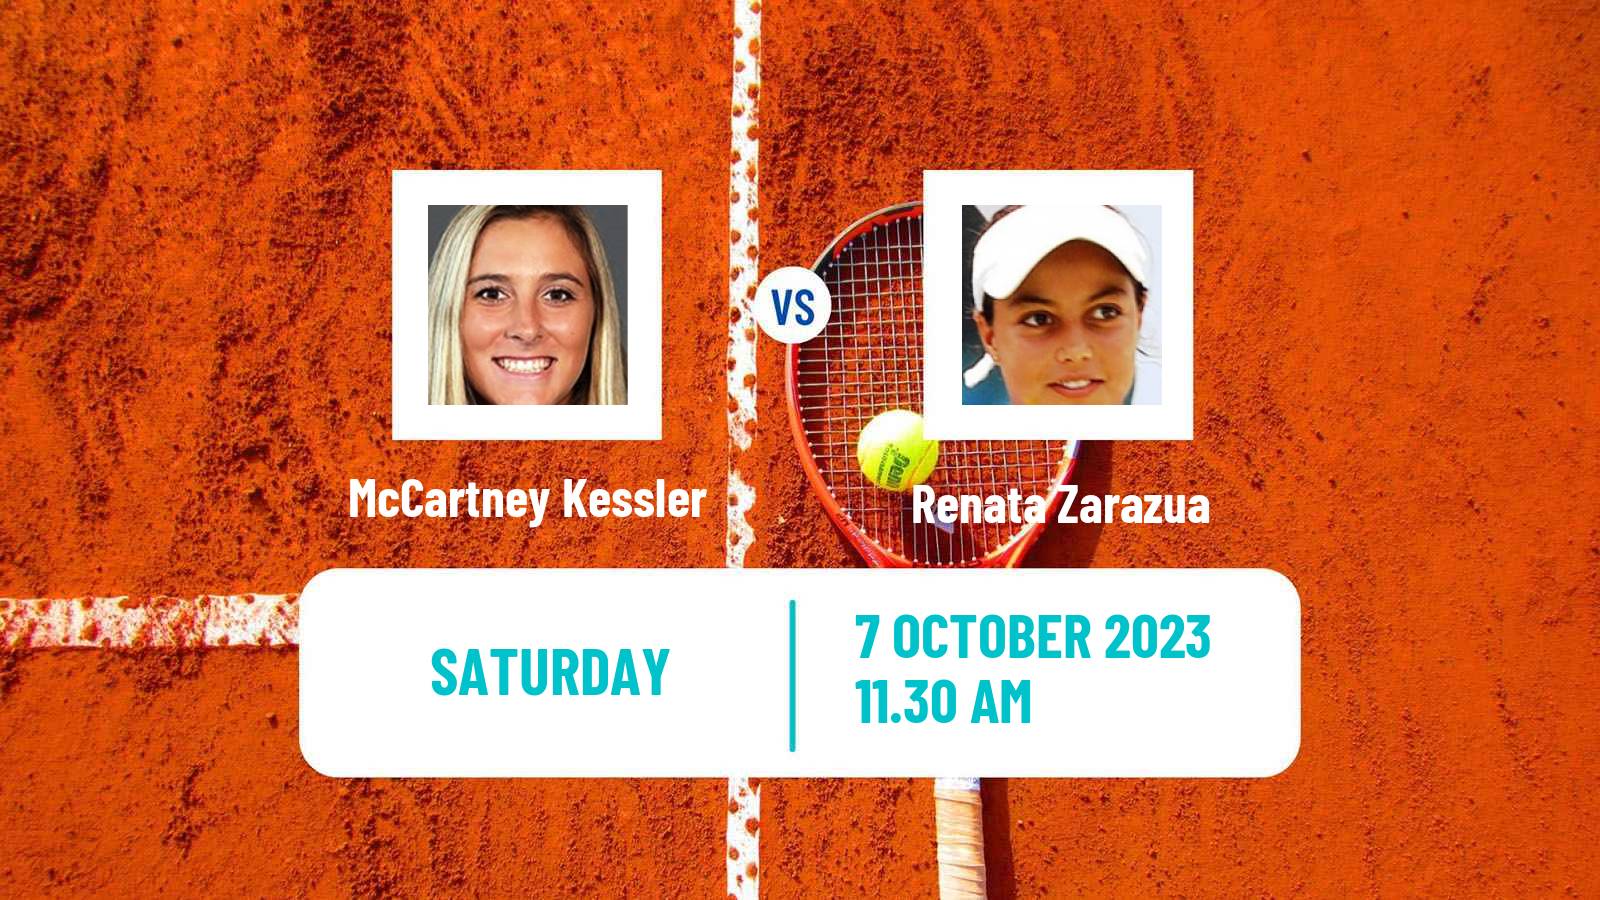 Tennis ITF W60 Rome Ga 2 Women McCartney Kessler - Renata Zarazua